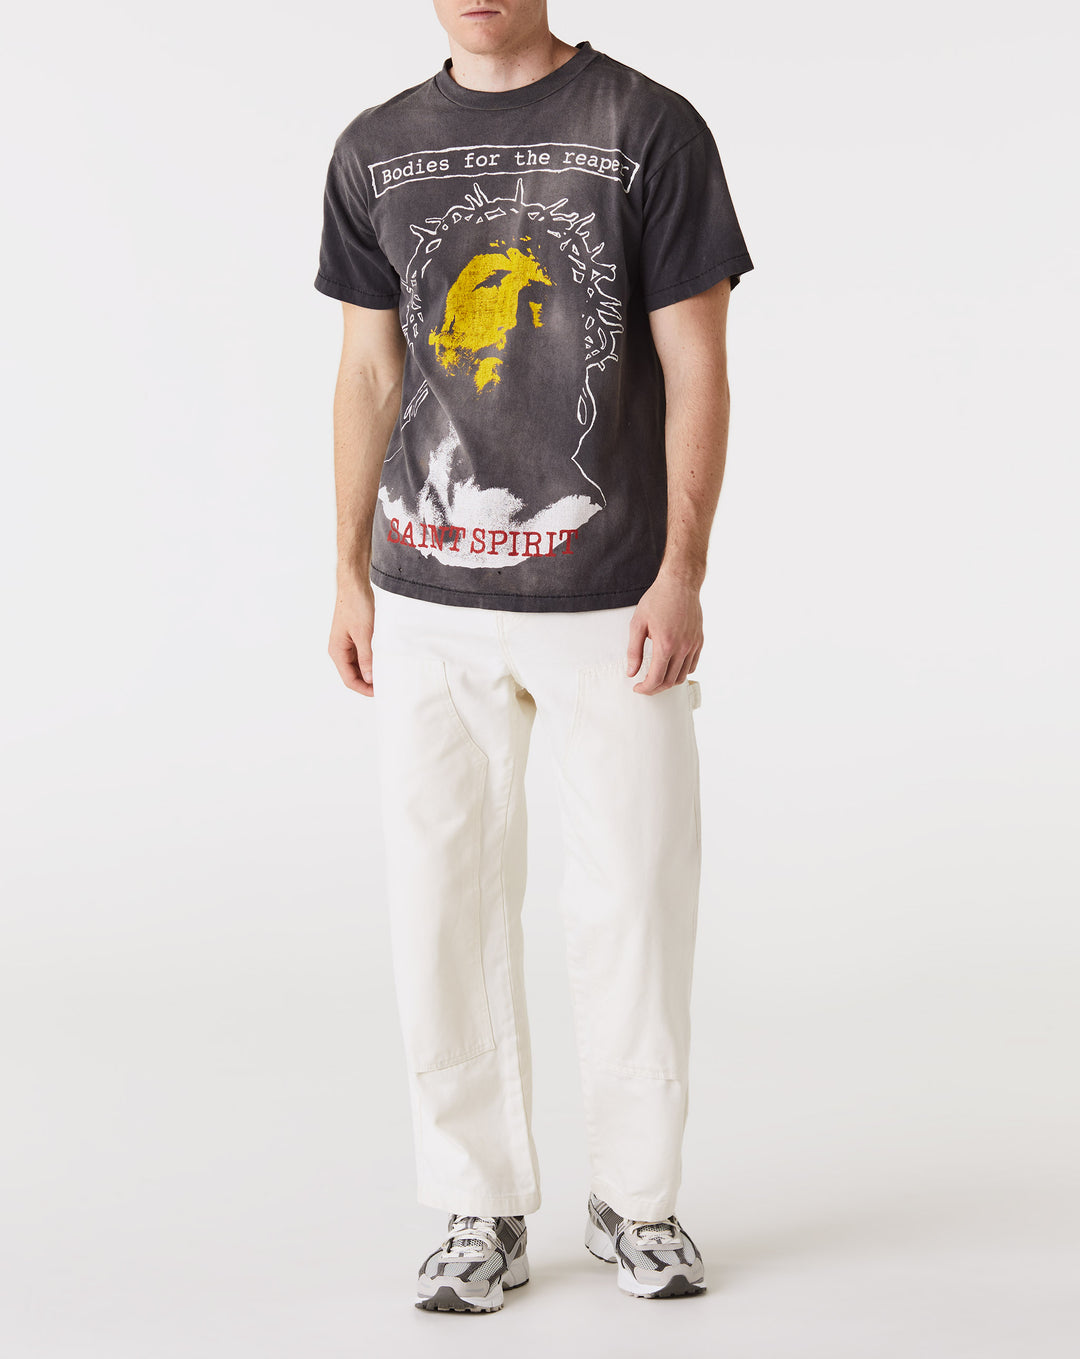 Saint Michael Bodies Reaper T-Shirt  - XHIBITION